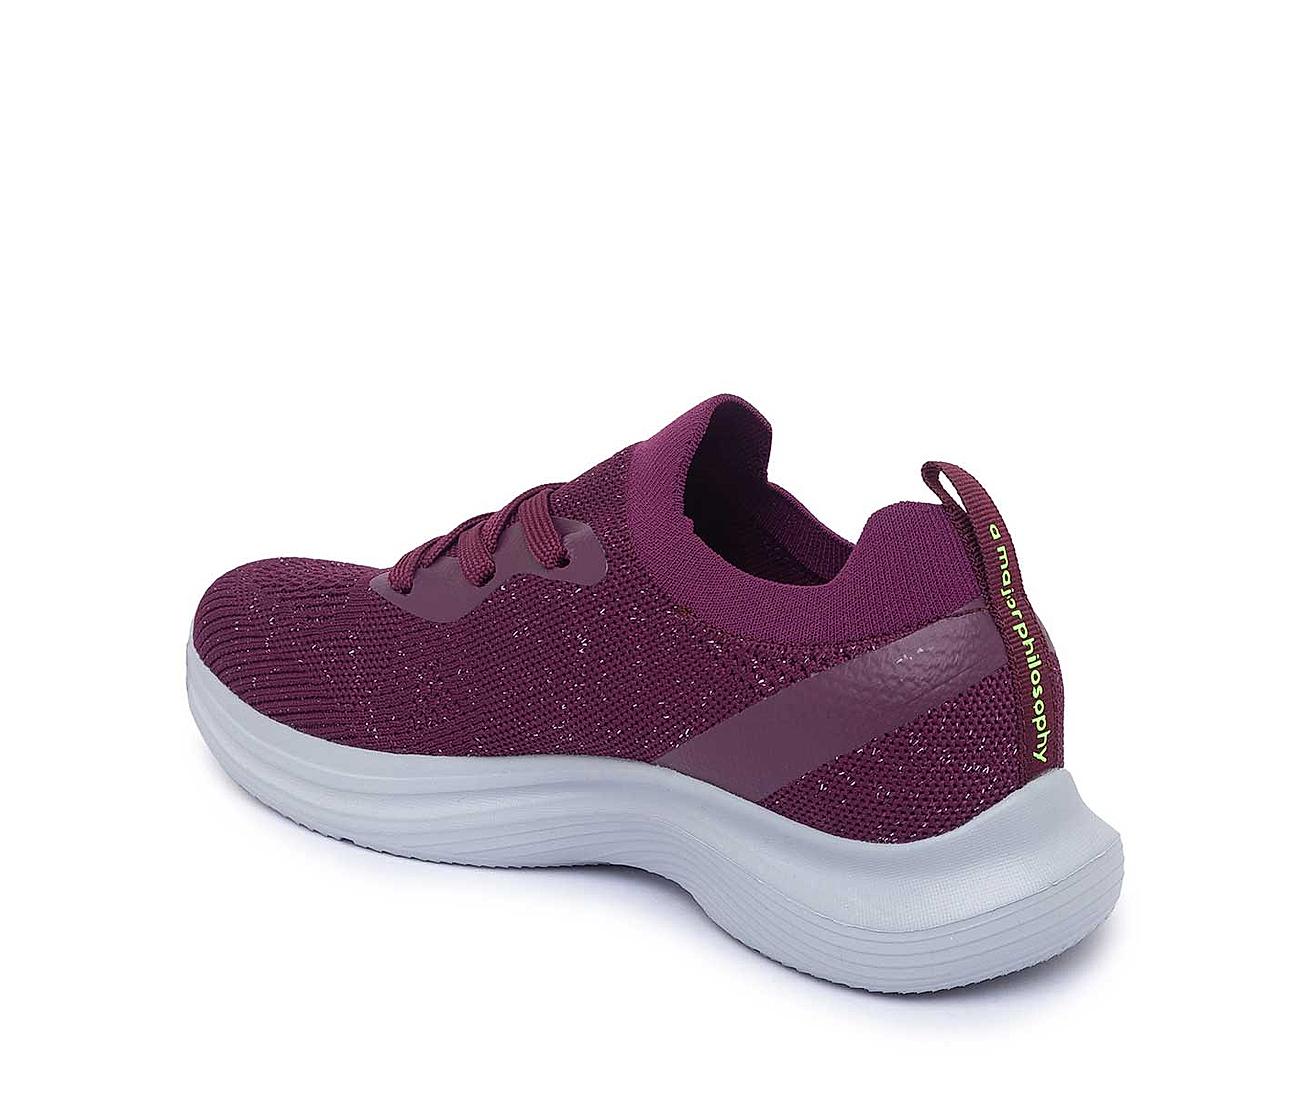 SUKUN Slip On Sneakers For Women - Buy SUKUN Slip On Sneakers For Women  Online at Best Price - Shop Online for Footwears in India | Flipkart.com